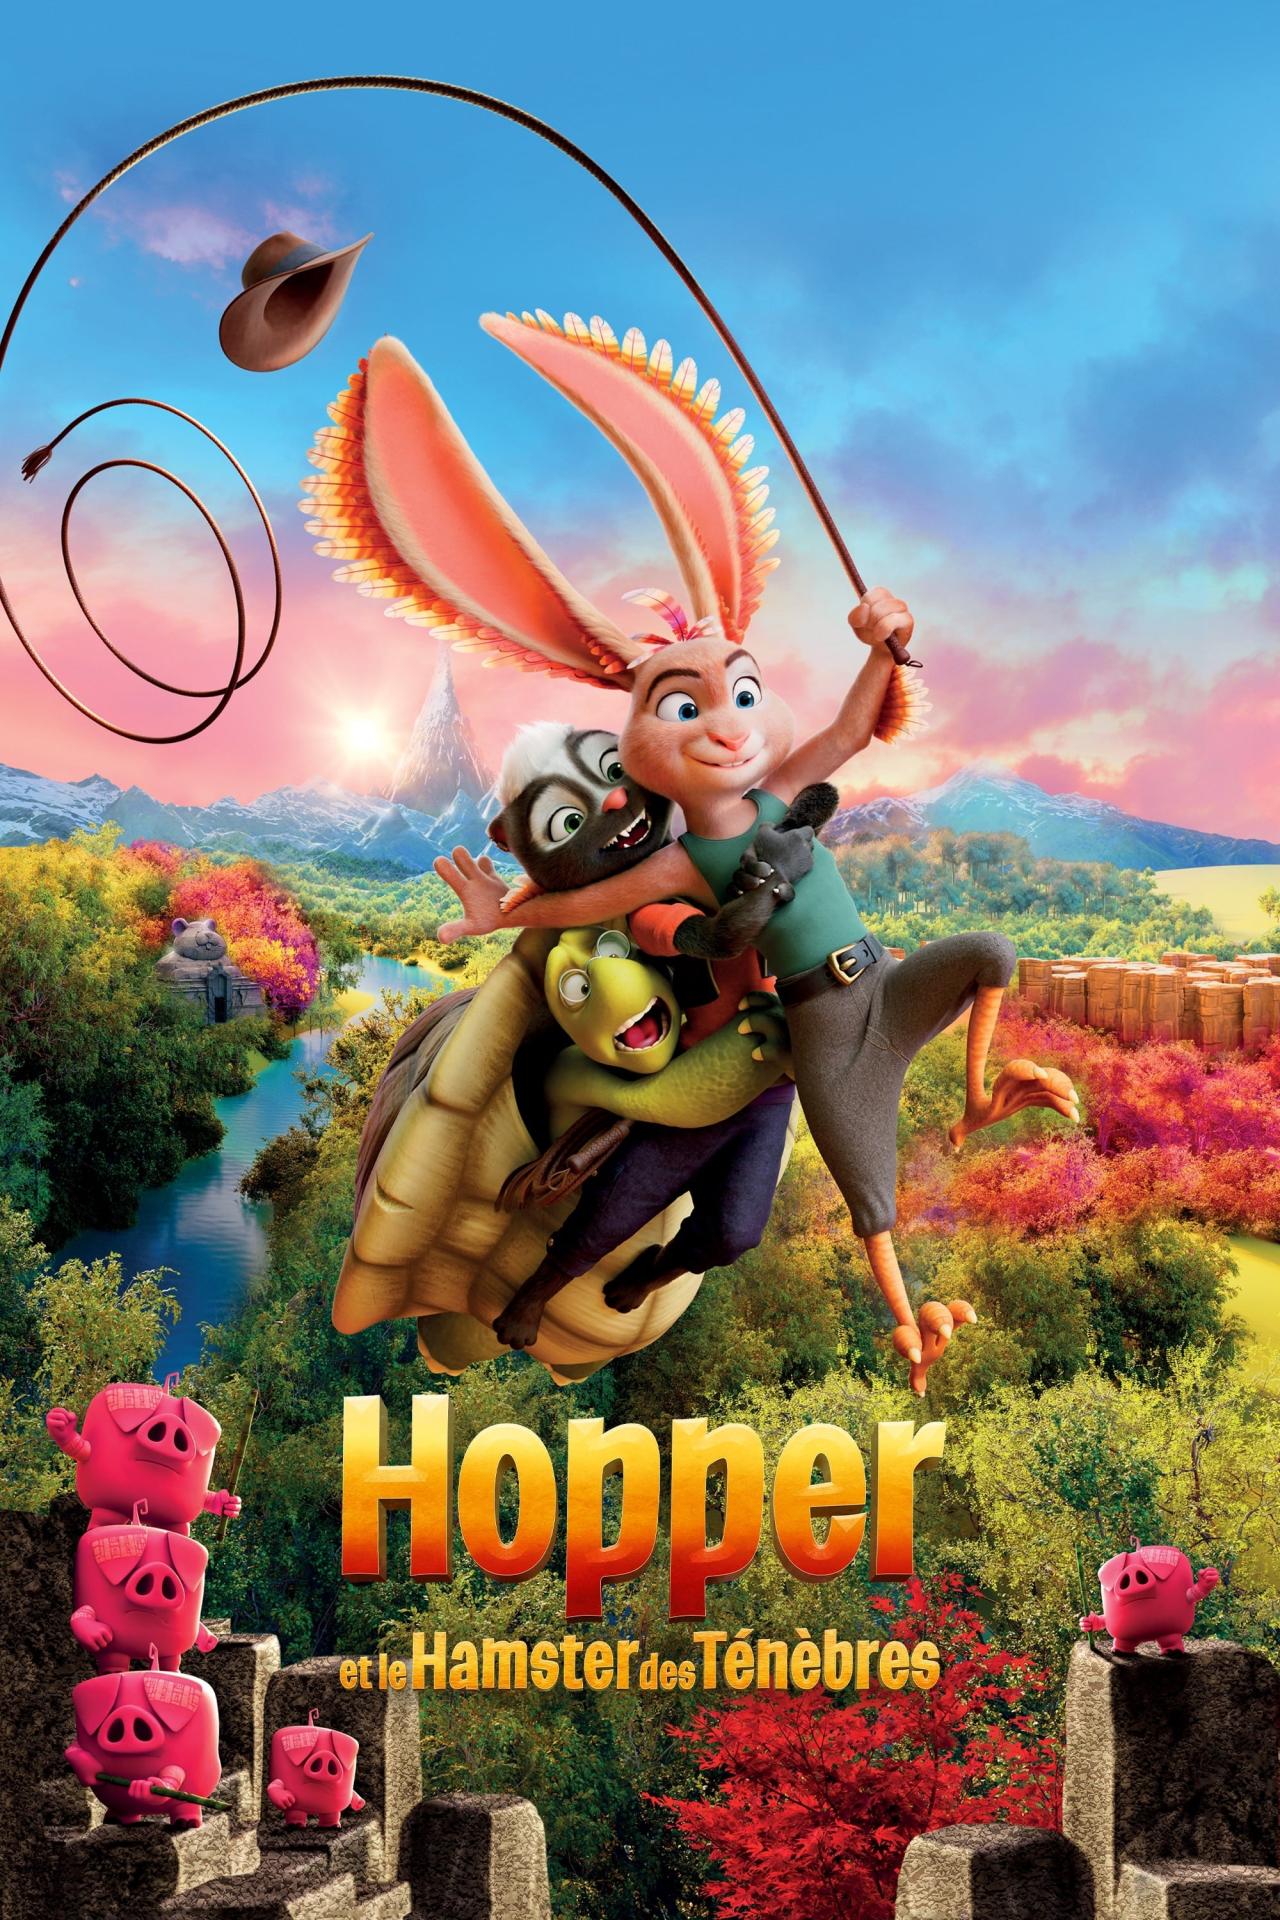 Hopper et le hamster des ténèbres est-il disponible sur Netflix ou autre ?